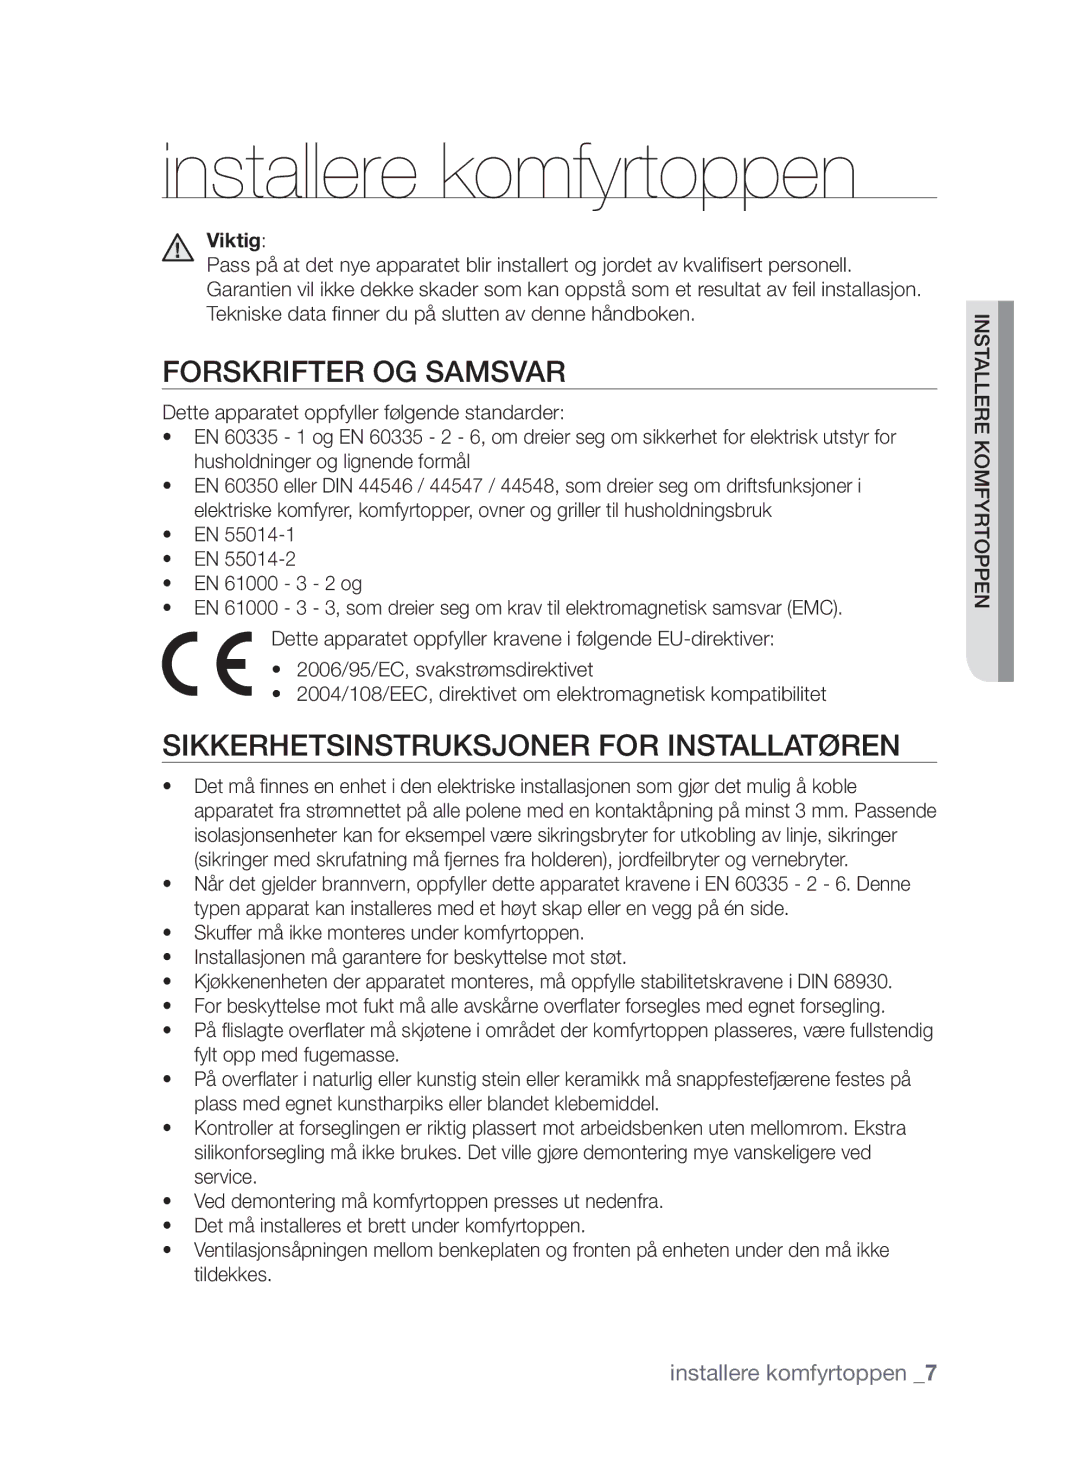 Samsung CTI613GIN/XEO Installere komfyrtoppen, Forskrifter og samsvar, Sikkerhetsinstruksjoner for installatøren, Viktig 